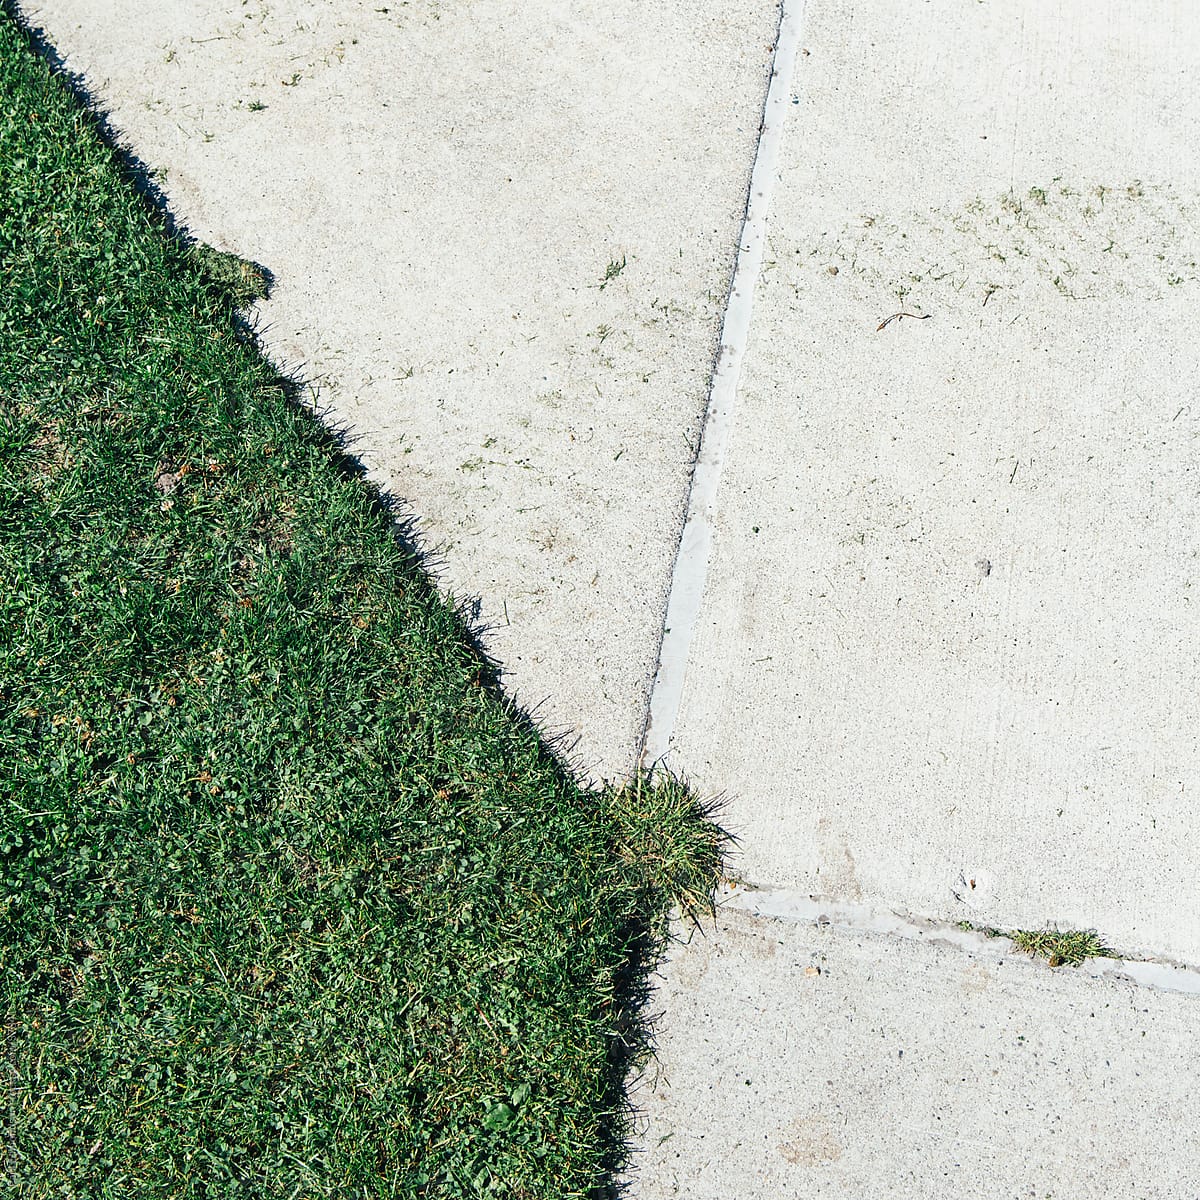 Freshly cut grass on sports field along edge of urban sidewalk